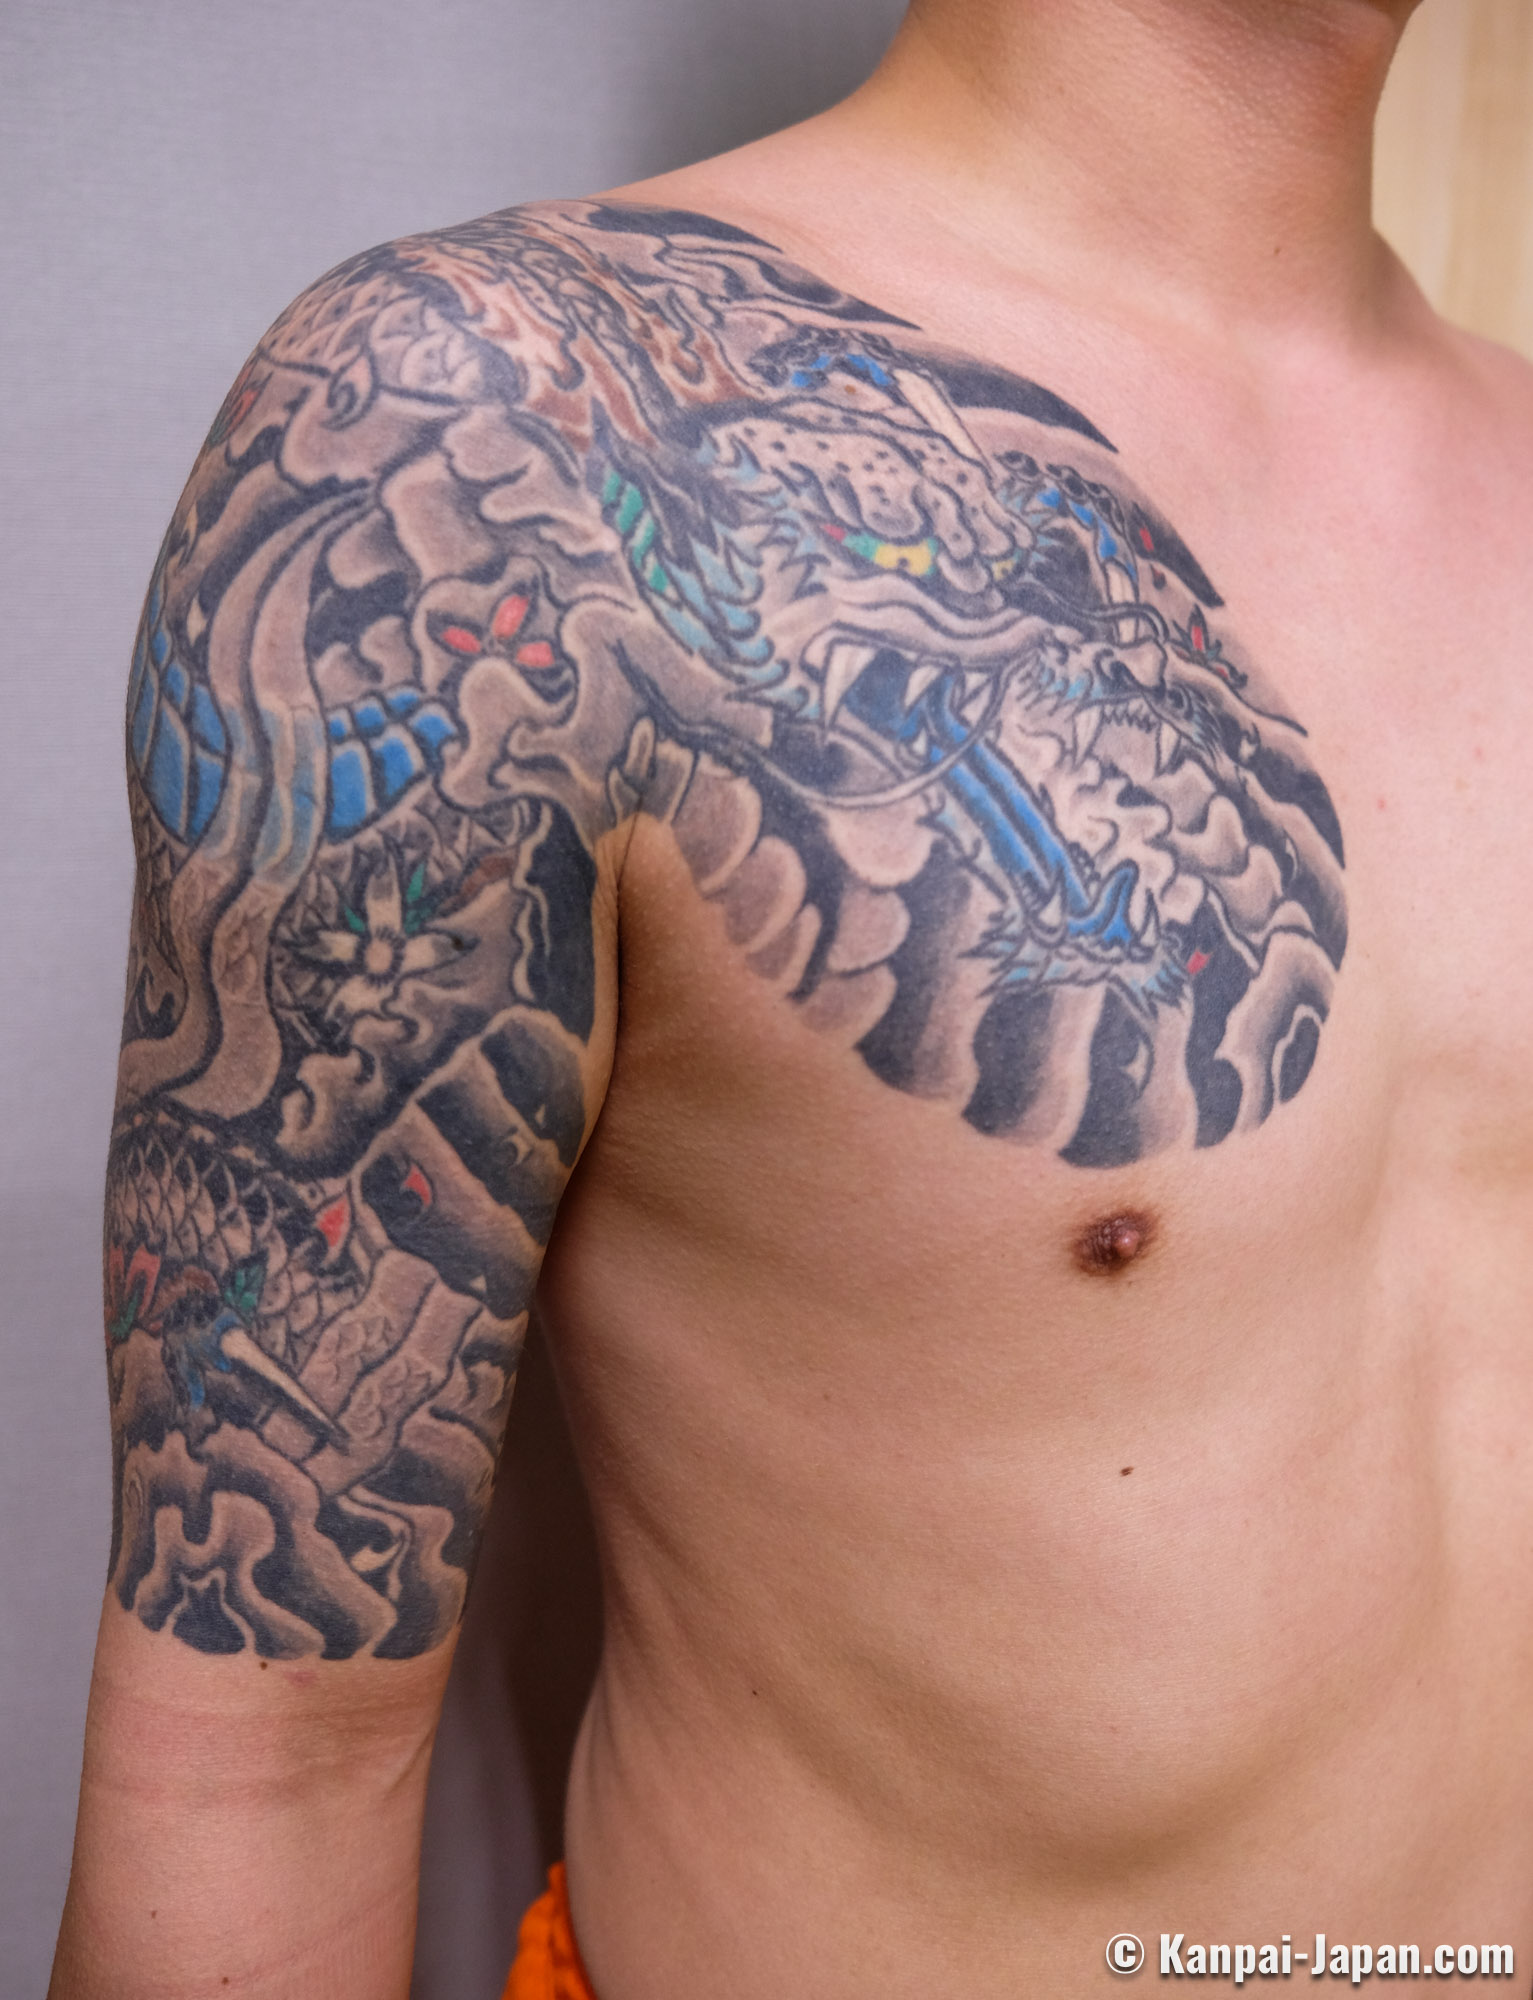 Are Tattoos 'Haram'? - Le Inka™